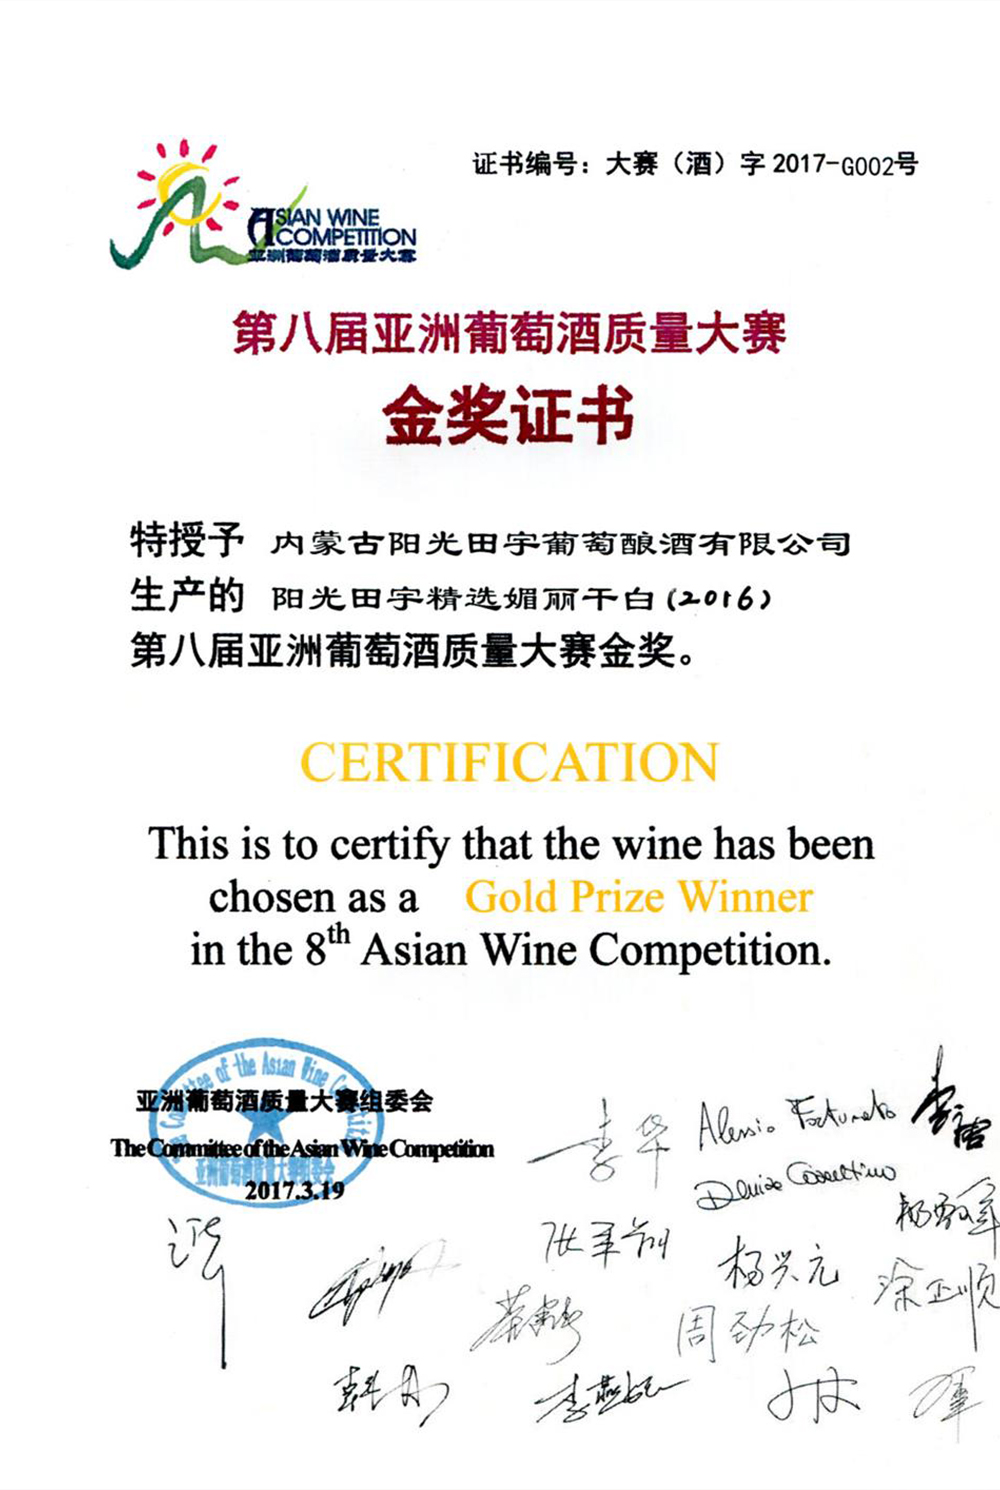 阳光田宇精选媚丽干白（2016）葡萄酒荣获第八届亚洲葡萄酒质量大赛金奖；